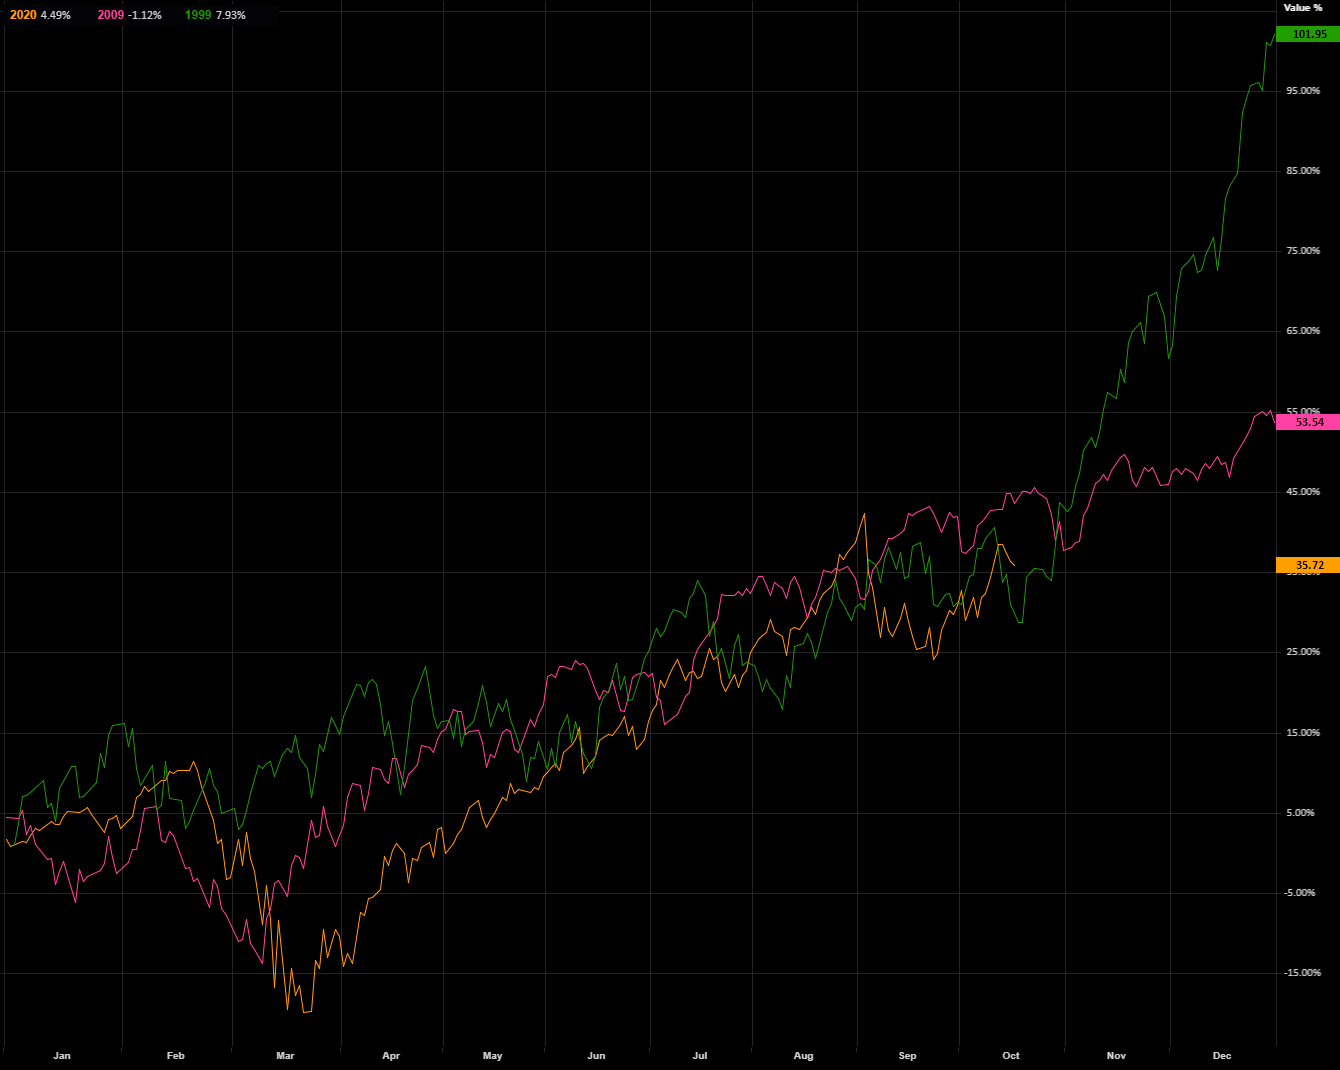 NASDAQ - 2009 or 1999 analogy?